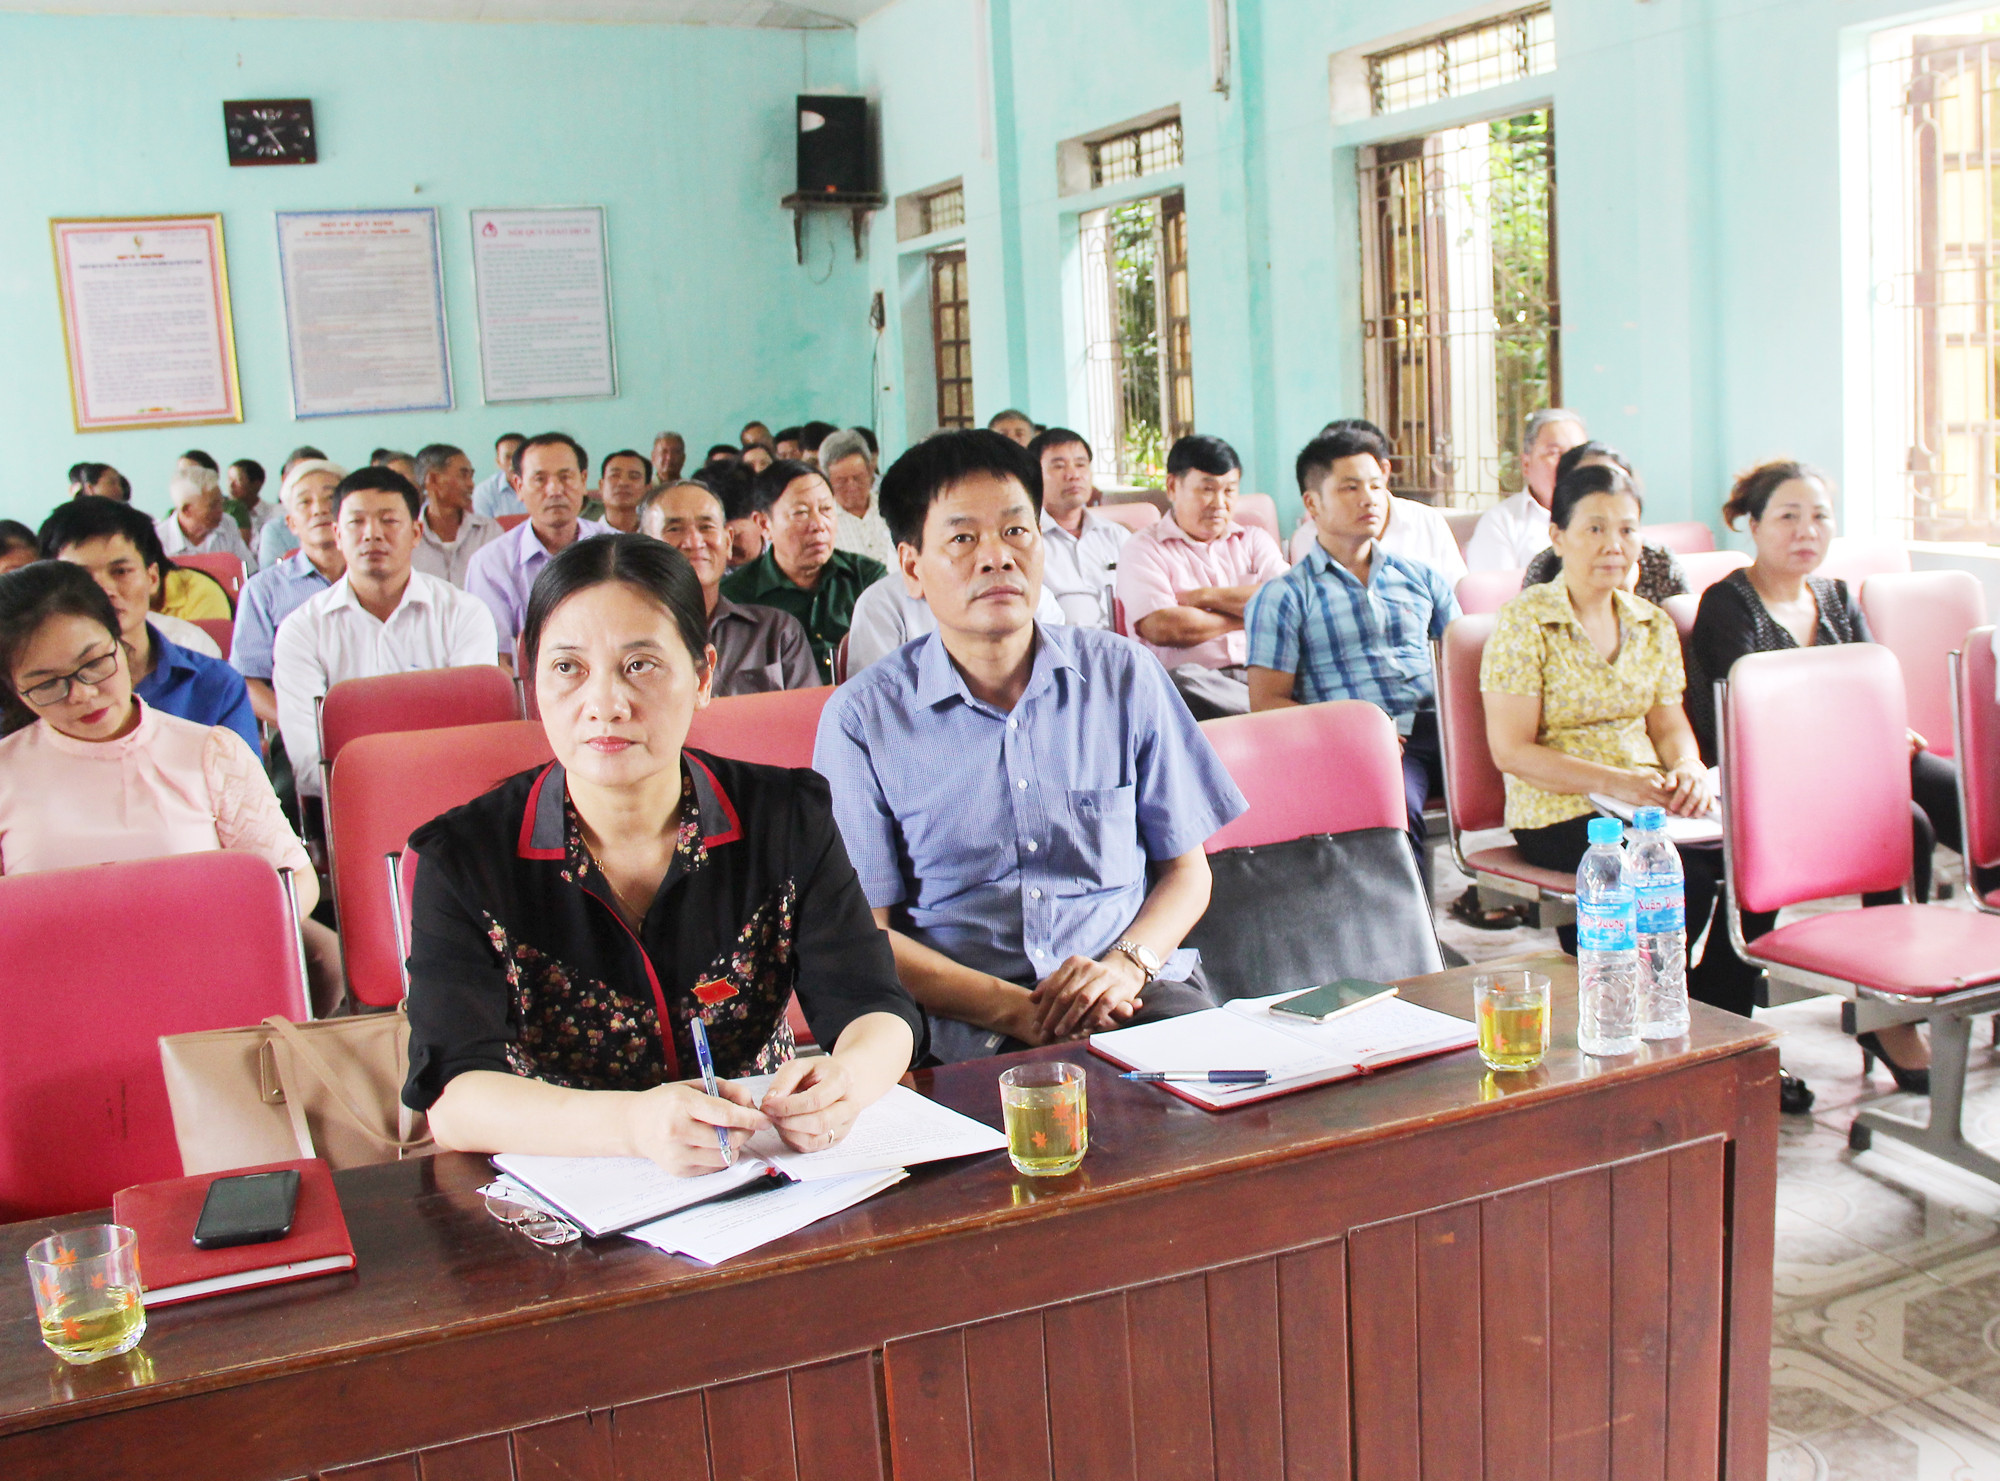 Đồng chí Cao Thị Hiền  - Ủy viên Ban Thường vụ Tỉnh ủy, Phó Chủ tịch HĐND tỉnh, nhấn mạnh: